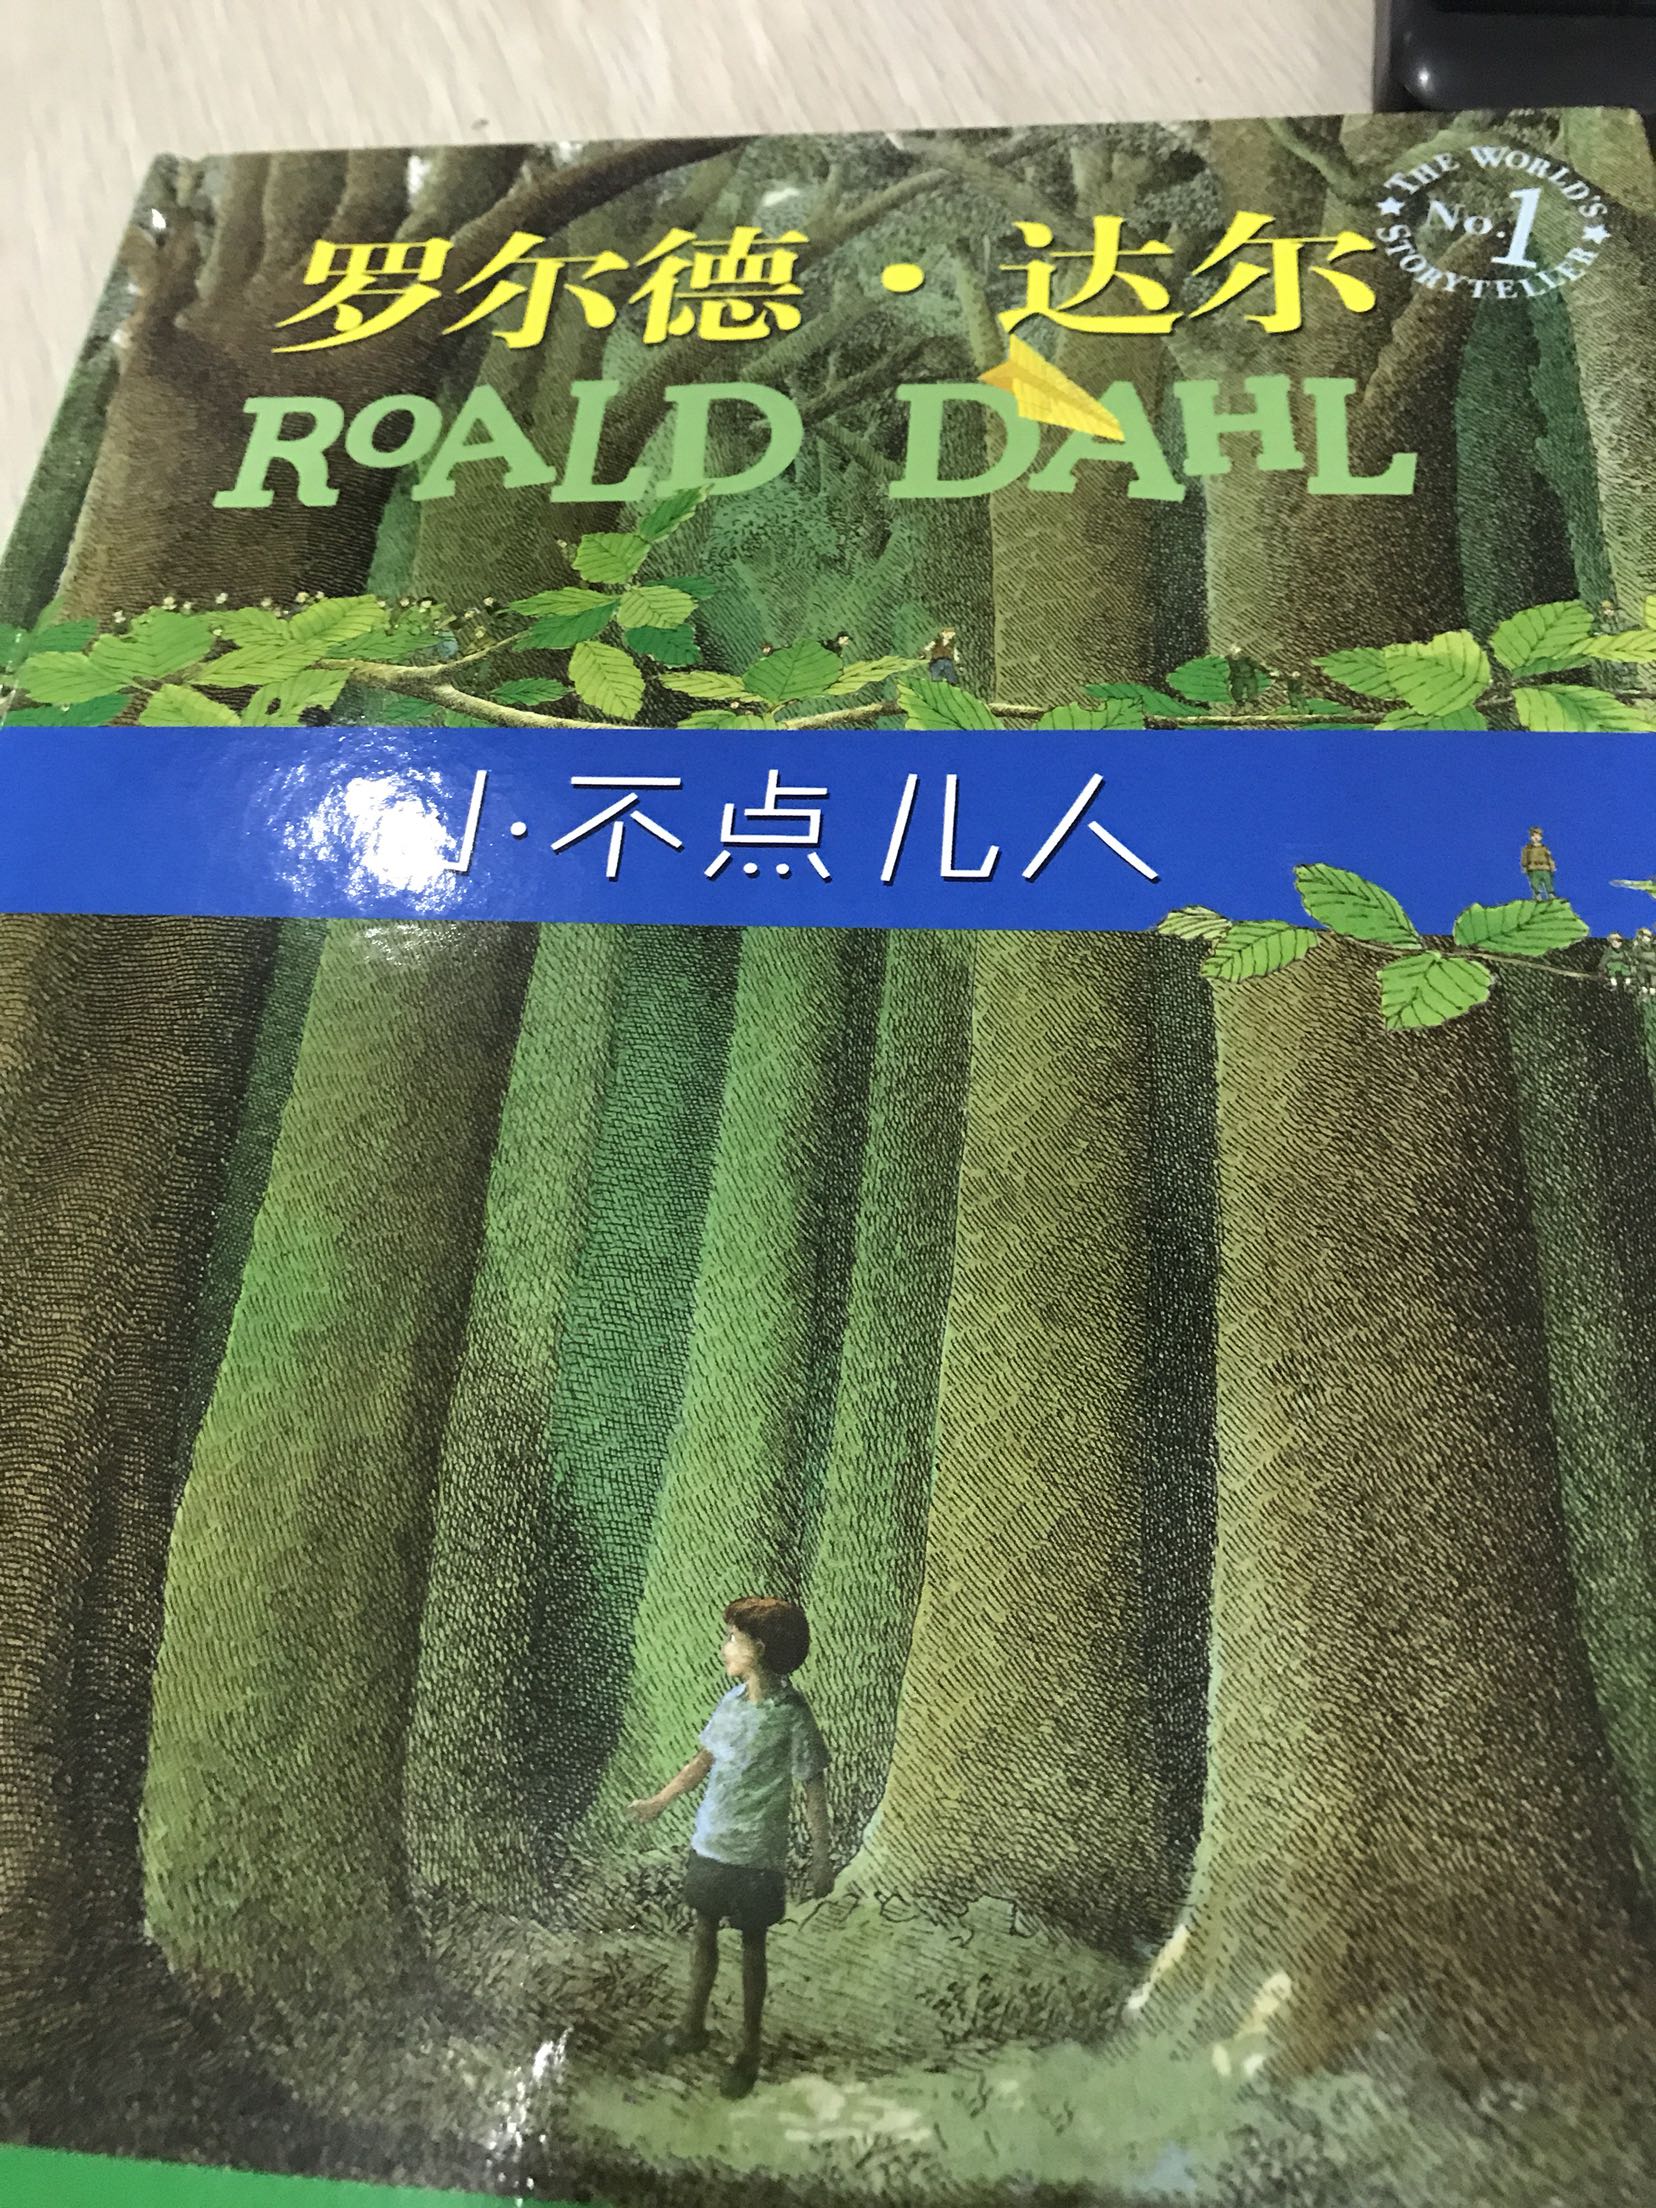 这是单独买的，不同套装里的书，这本书的插画相当精美，很有特色，让我们一起跟着比利去大森林探险吧！